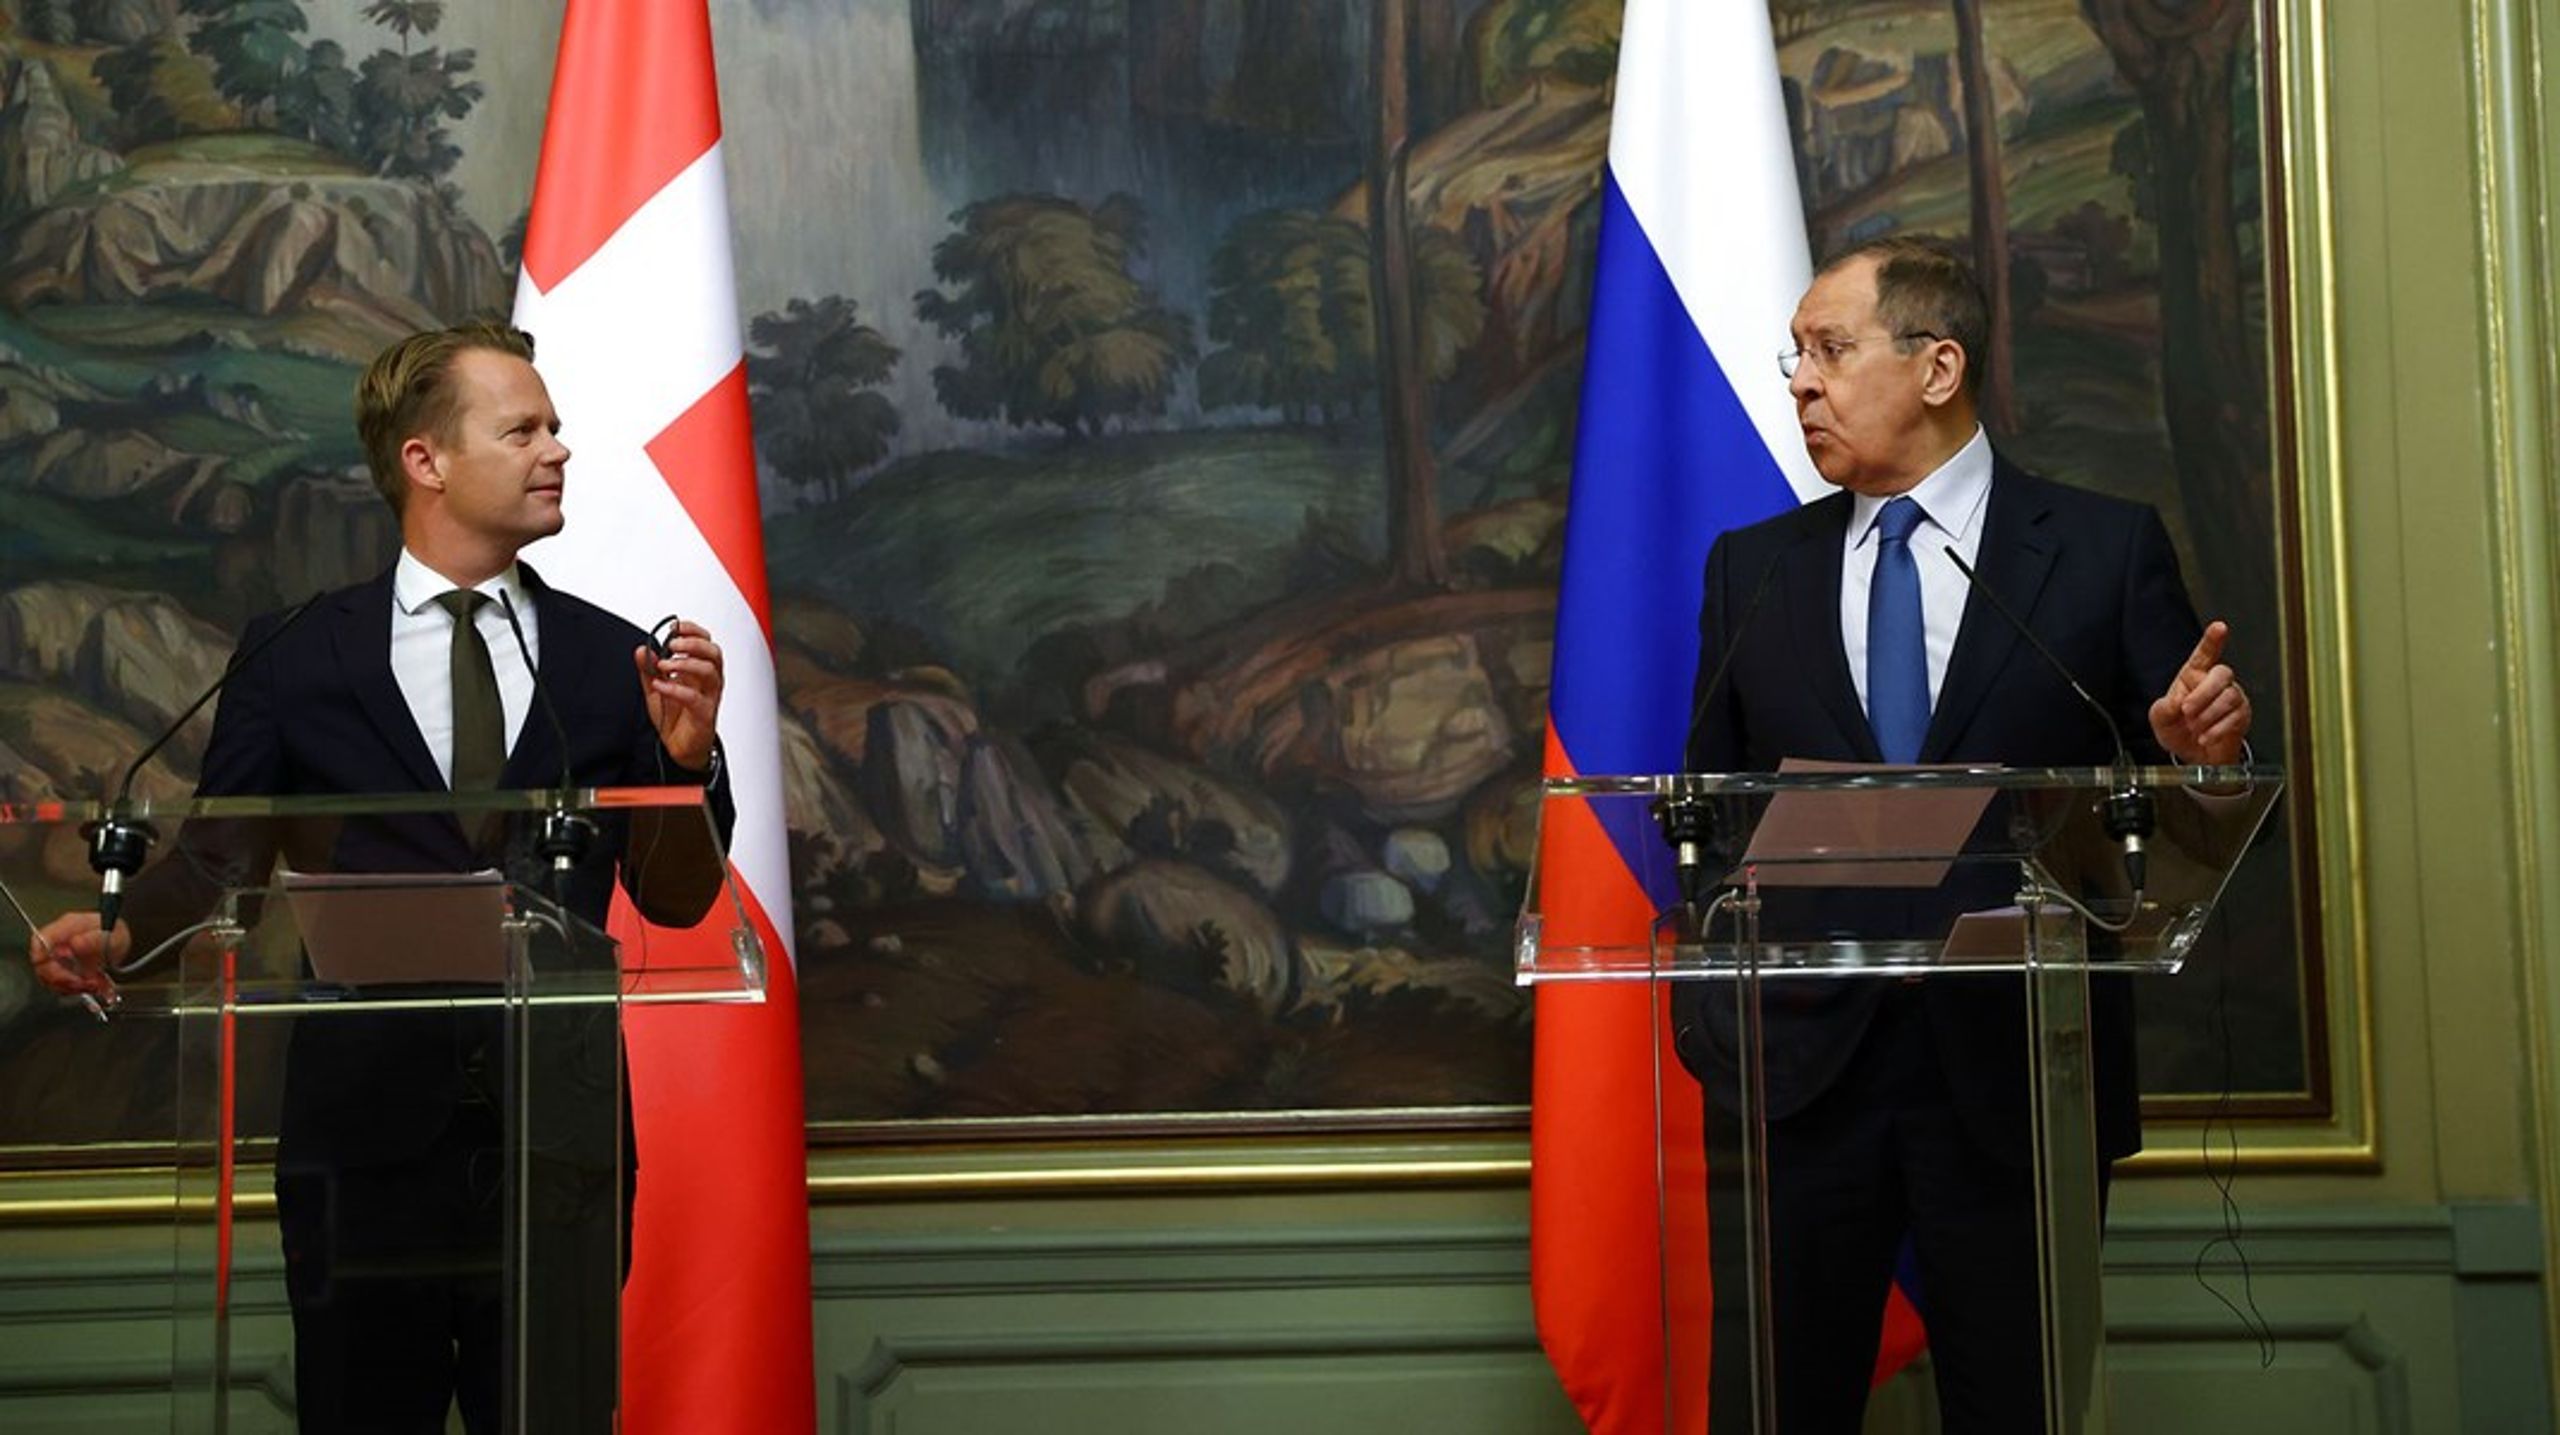 Danmarks udenrigsminister Jeppe Kofod (t.v.) og Ruslands udenrigsminister Sergei Lavrov (t.h.) ved et pressemøde i Moskva i oktober 2020.